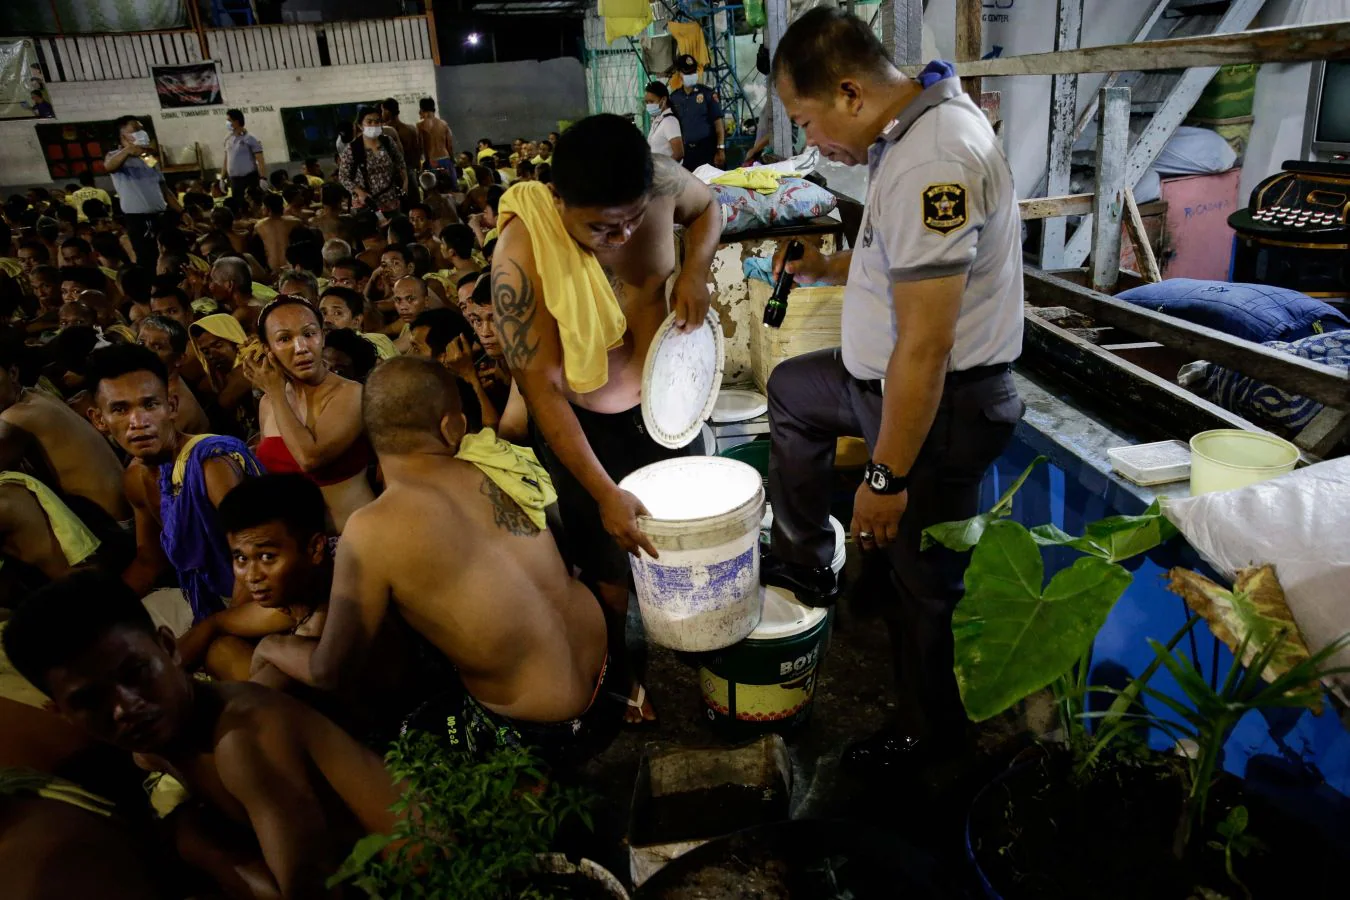 La inspección fue realizada por miembros de la oficina de Administración de Penas y Penología, el distrito de policía de Manila y la Agencia de Control de Drogas filipina, como parte de una operación para reducir el contrabando ilegal en las cárceles de todo el país.